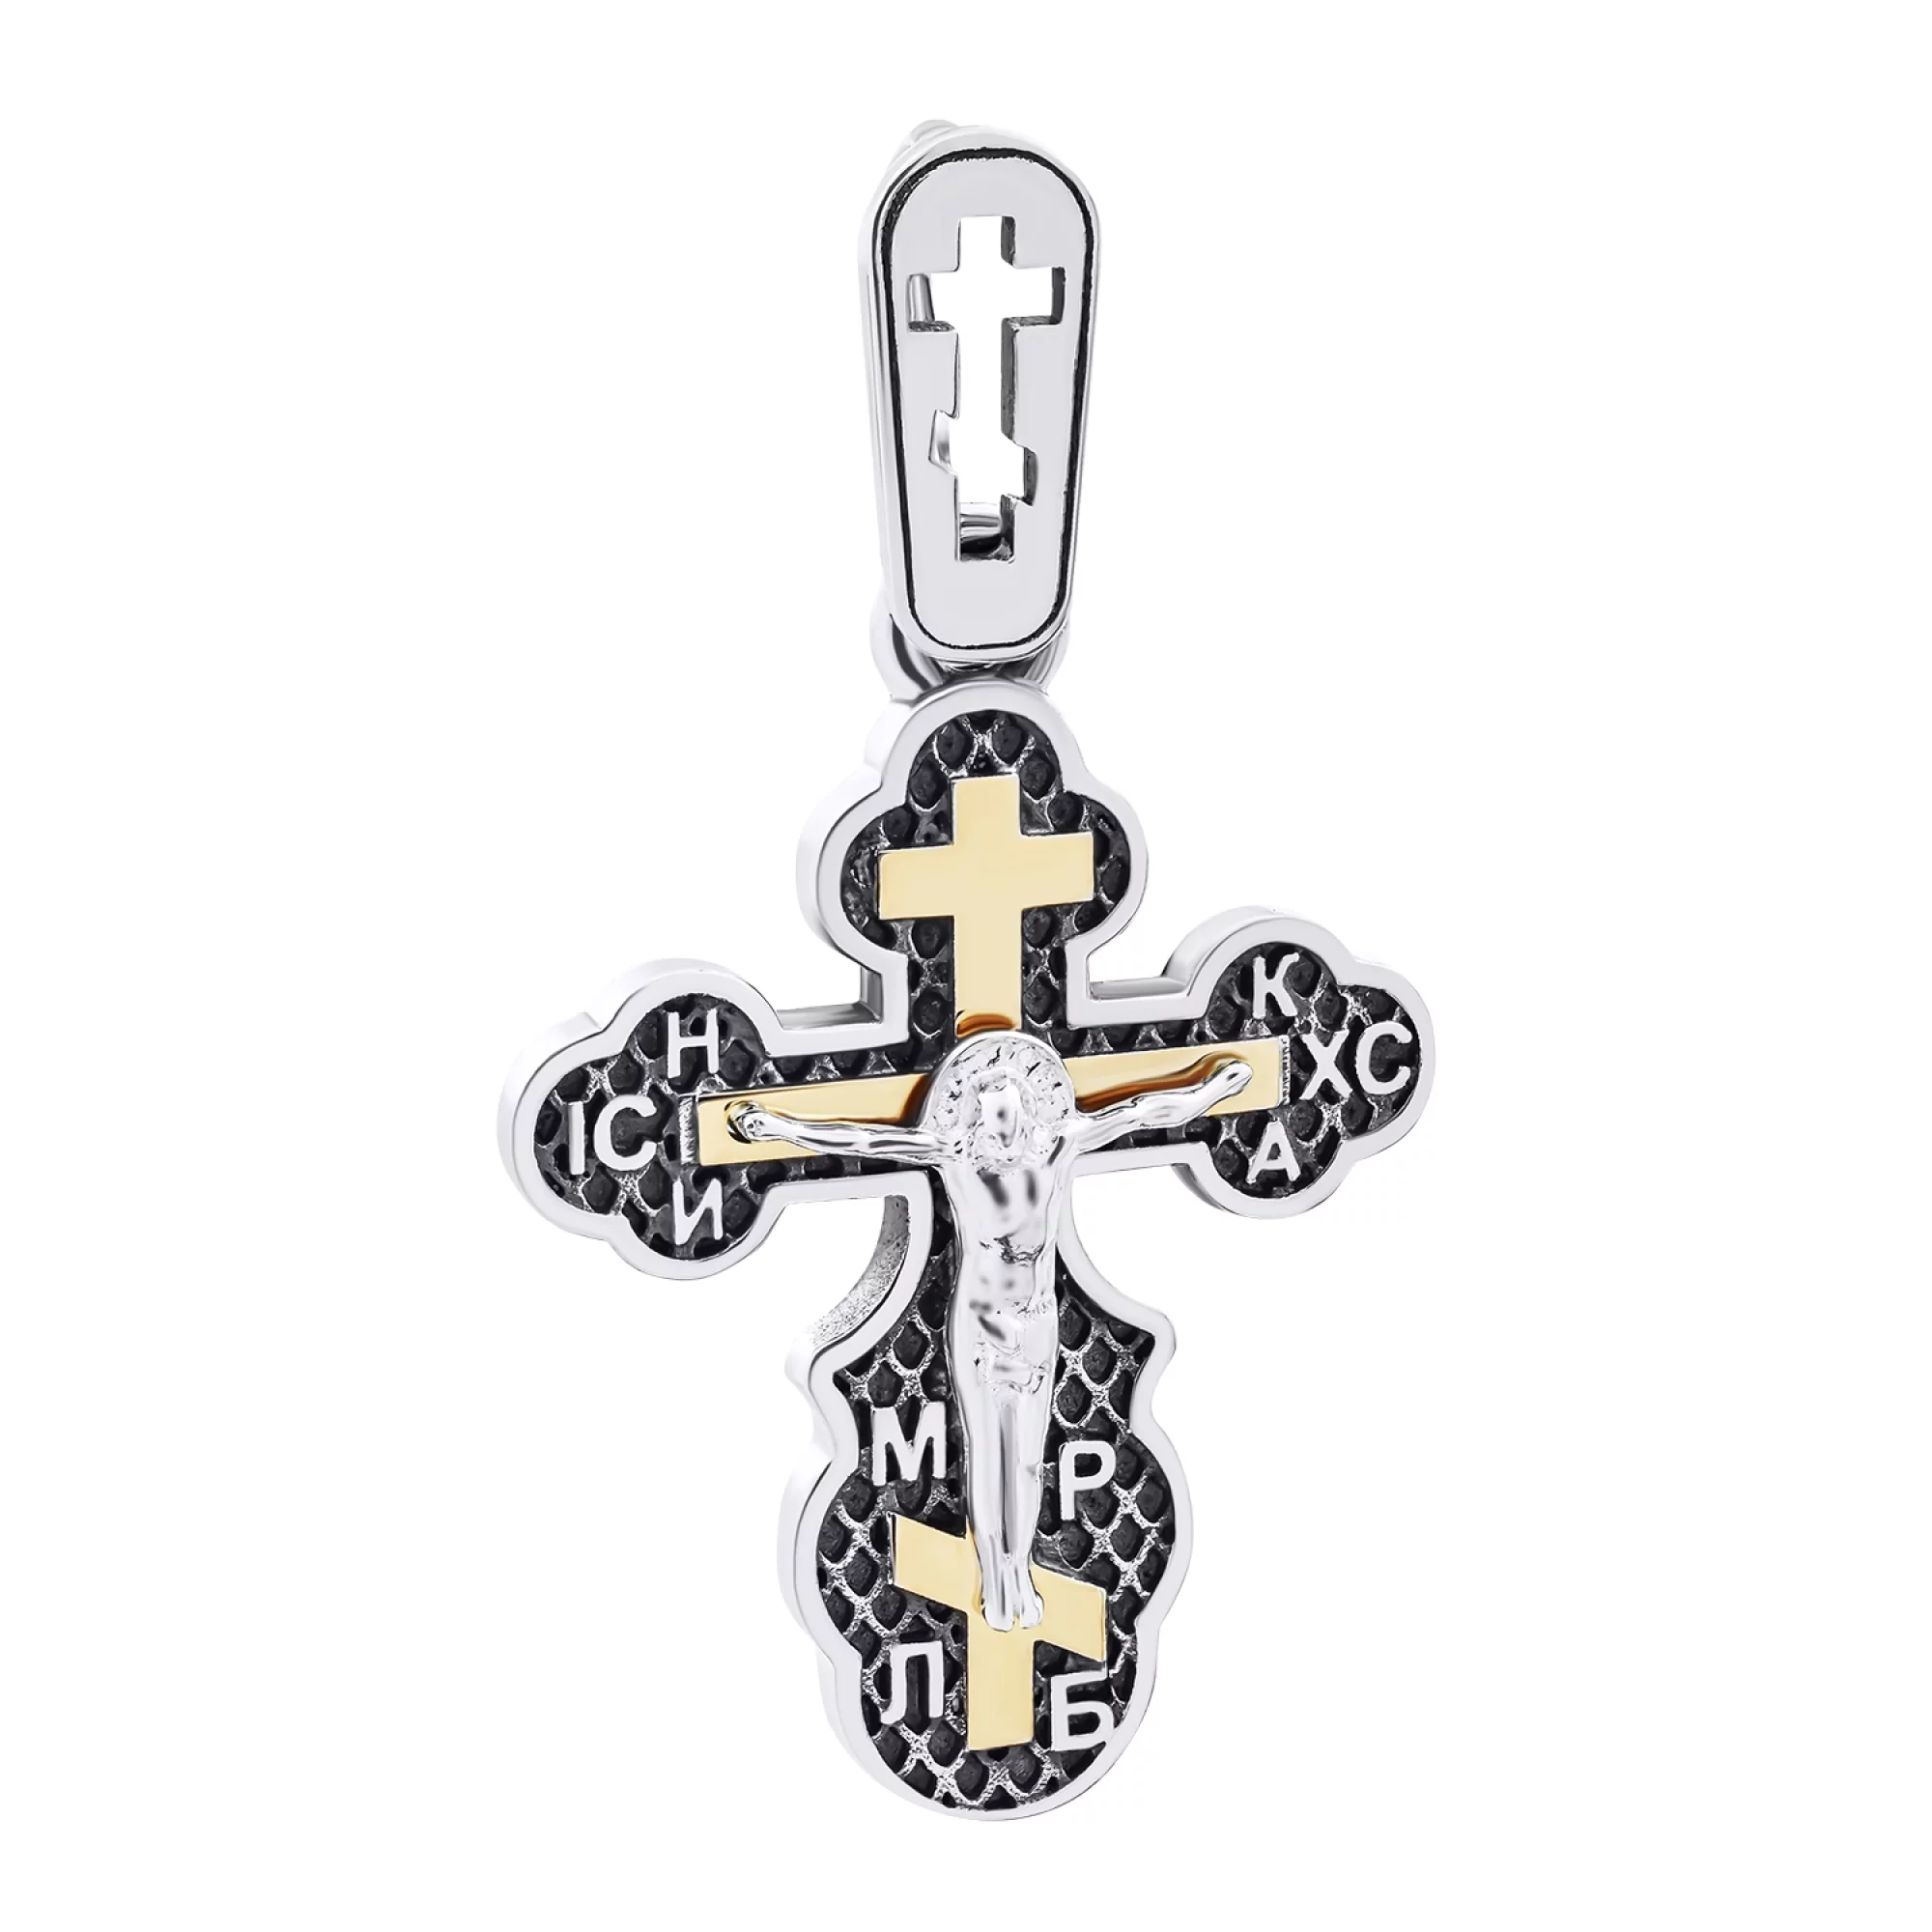 Срібний хрестик з позолотою - 1520348 – зображення 1